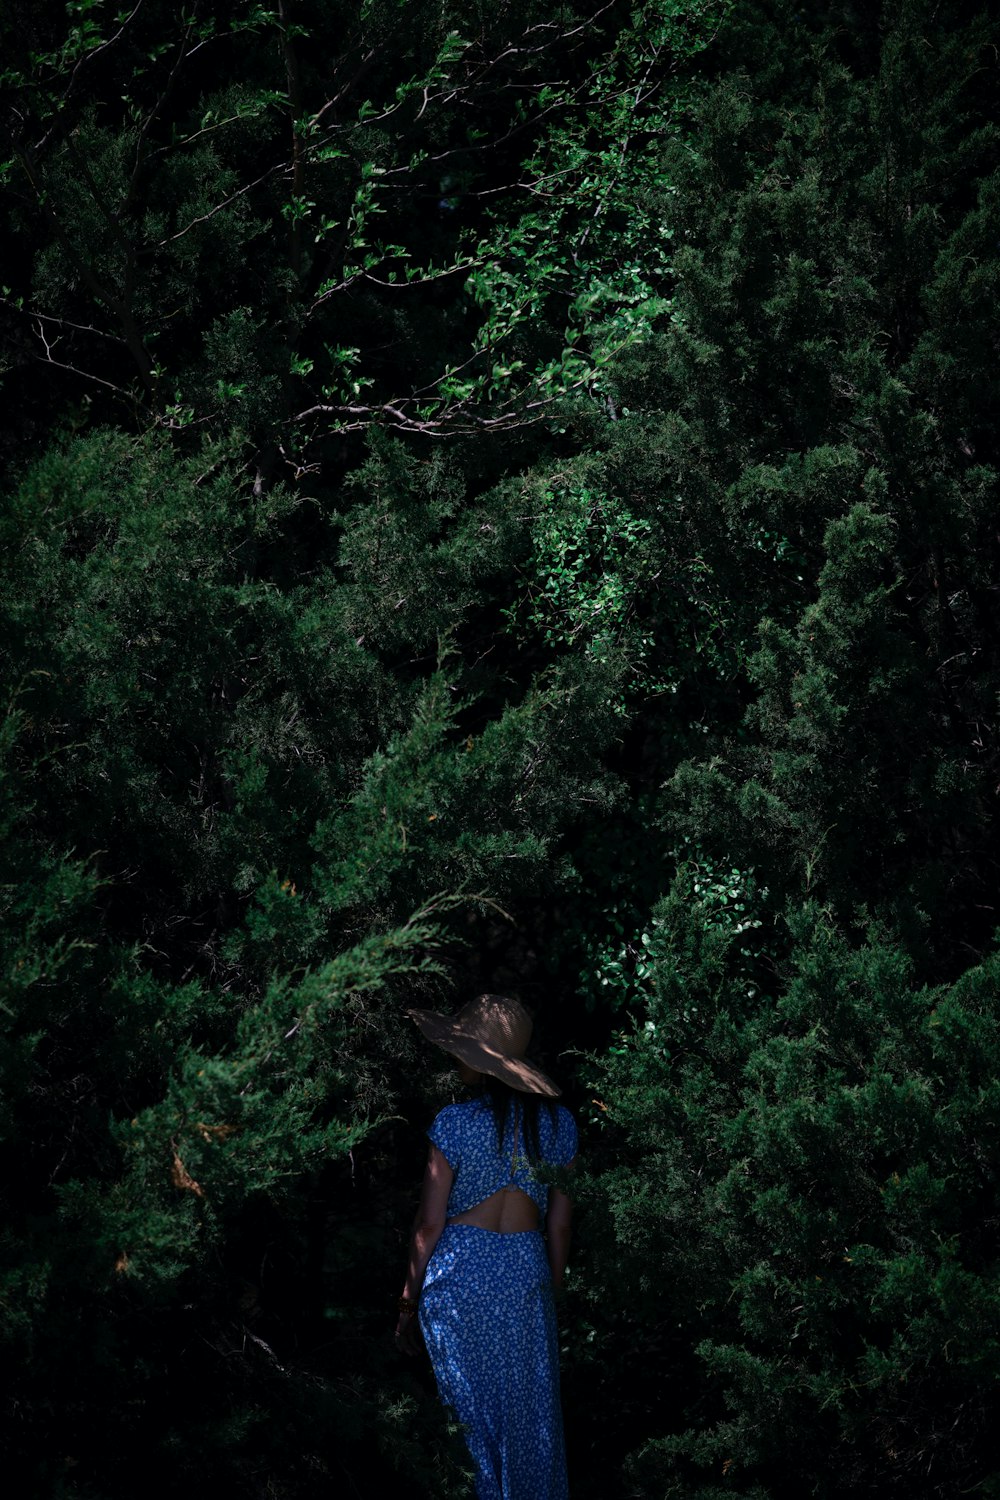 Frau in blau-rotem Kleid tagsüber vor grünen Bäumen